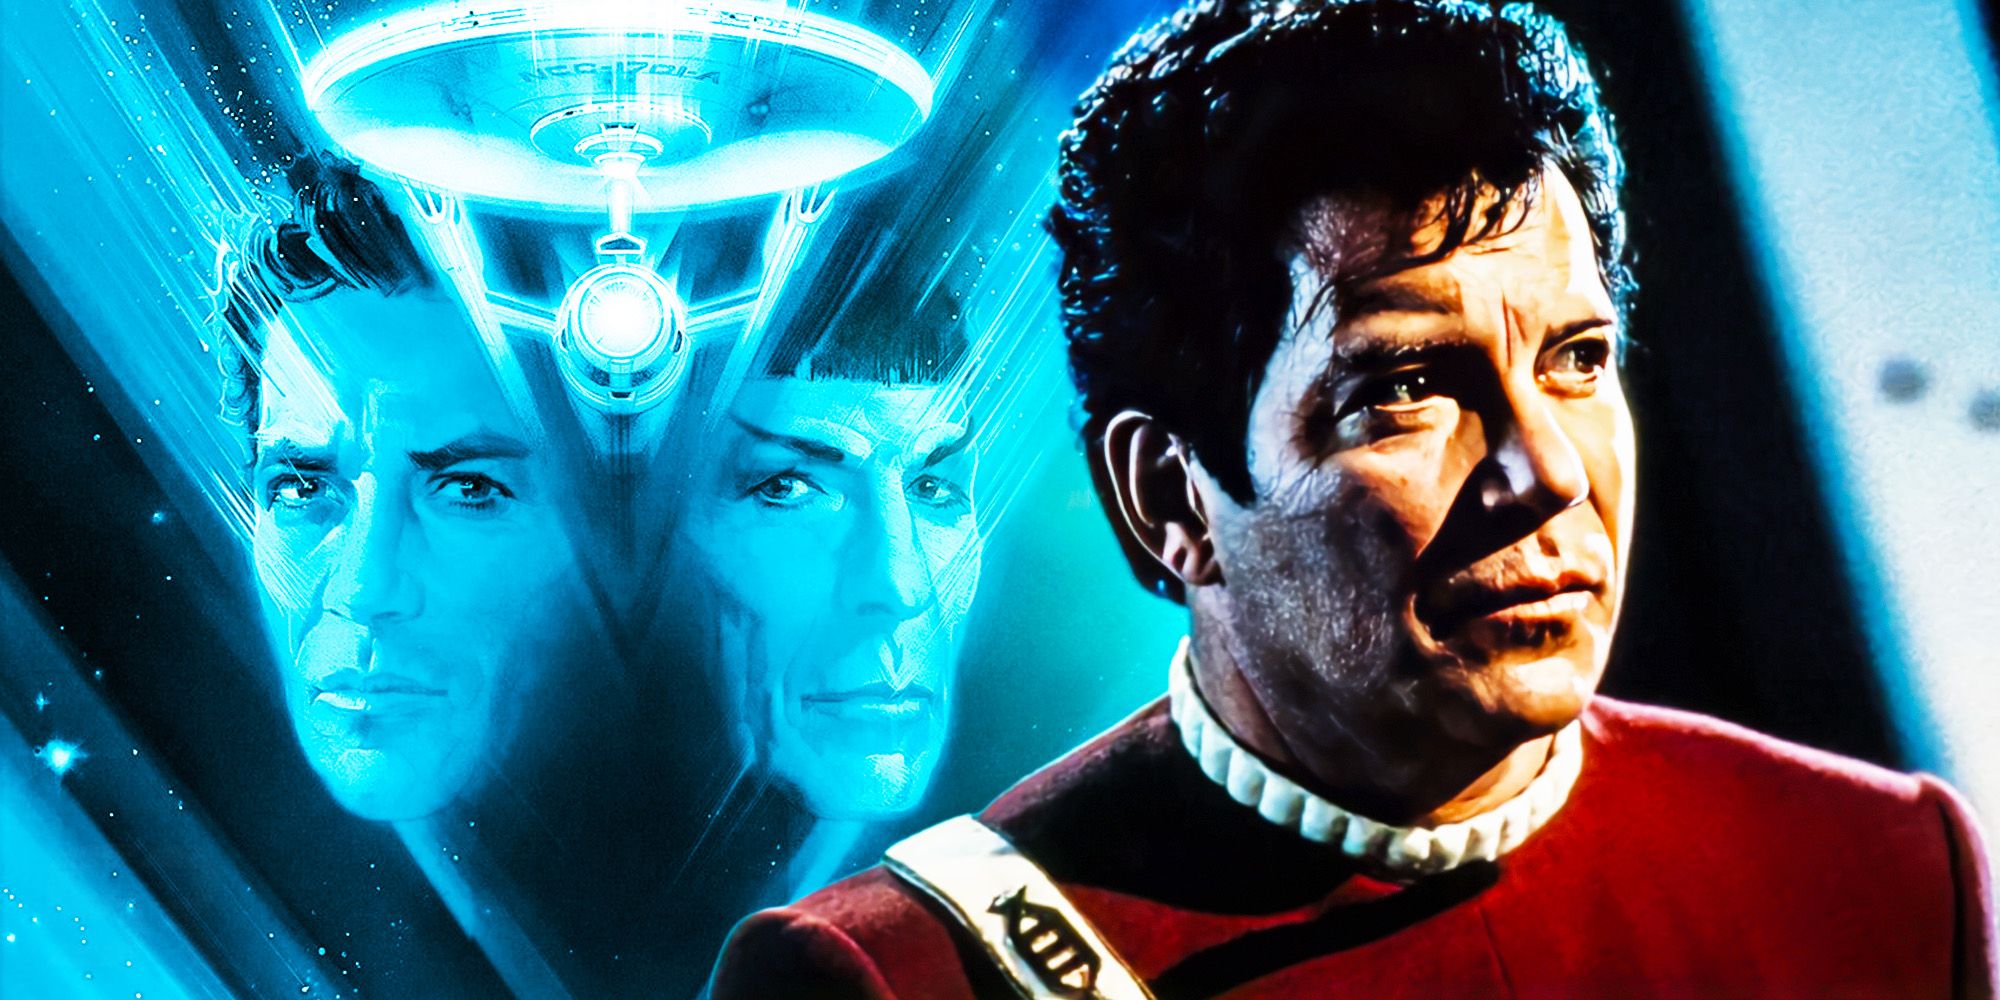 William Shatner sad as Captain Kirk in front of Star Trek V poster